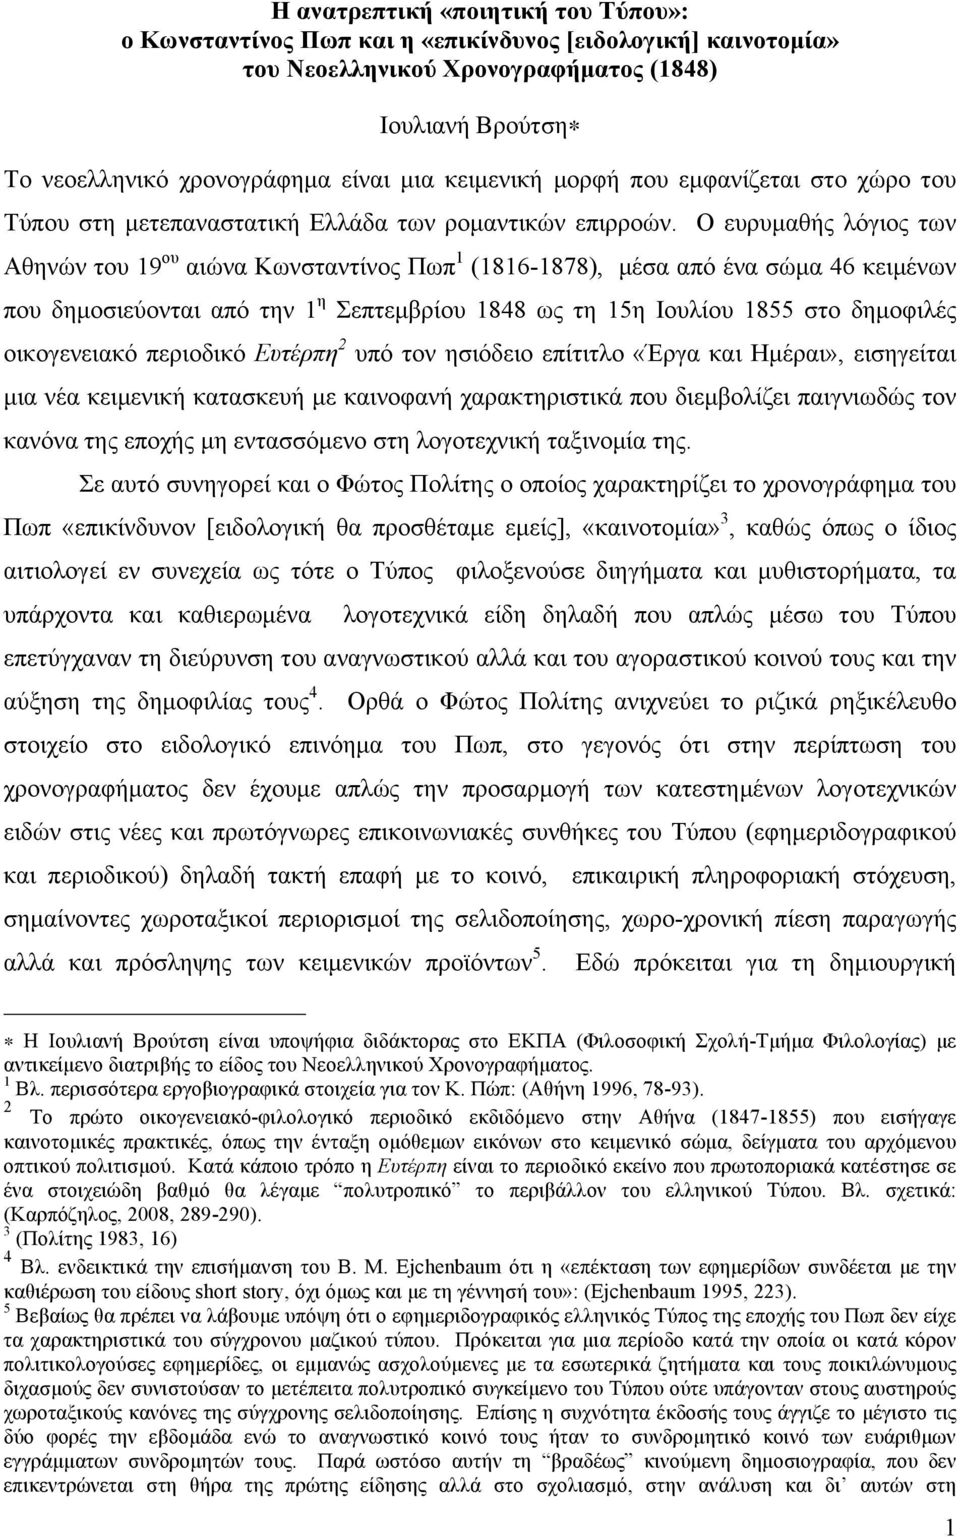 Ο ευρυµαθής λόγιος των Αθηνών του 19 ου αιώνα Κωνσταντίνος Πωπ 1 (1816-1878), µέσα από ένα σώµα 46 κειµένων που δηµοσιεύονται από την 1 η Σεπτεµβρίου 1848 ως τη 15η Ιουλίου 1855 στο δηµοφιλές